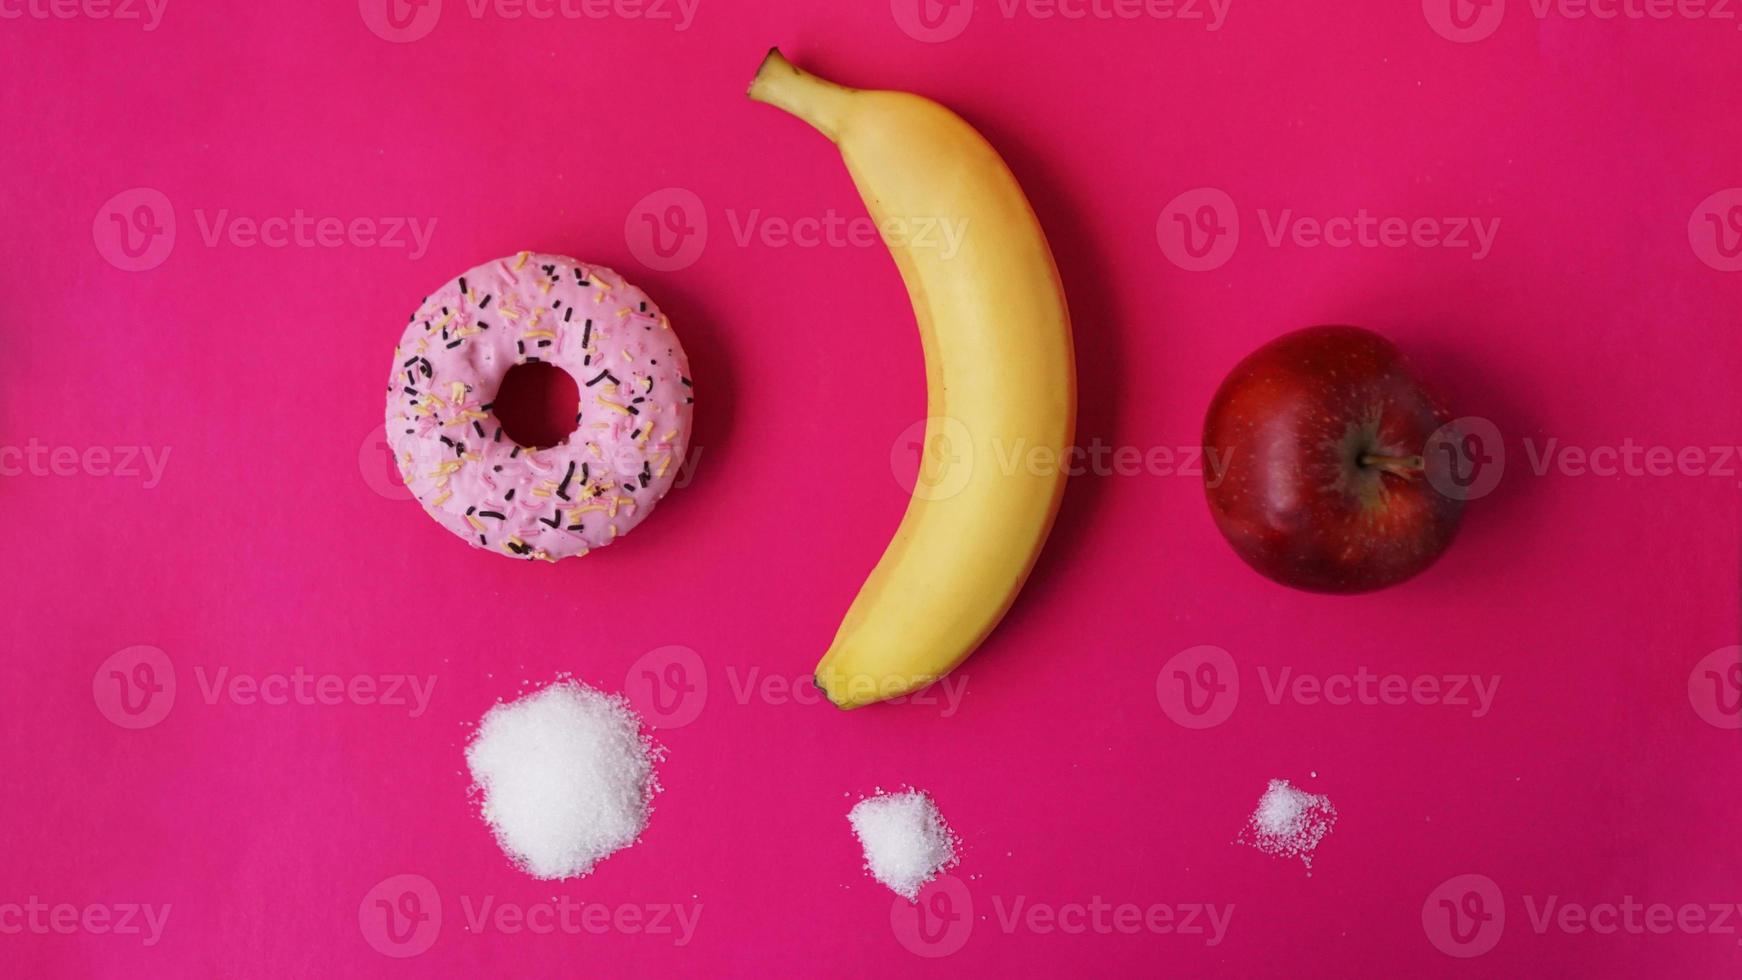 escolha frutas saudáveis em vez de doces não saudáveis foto